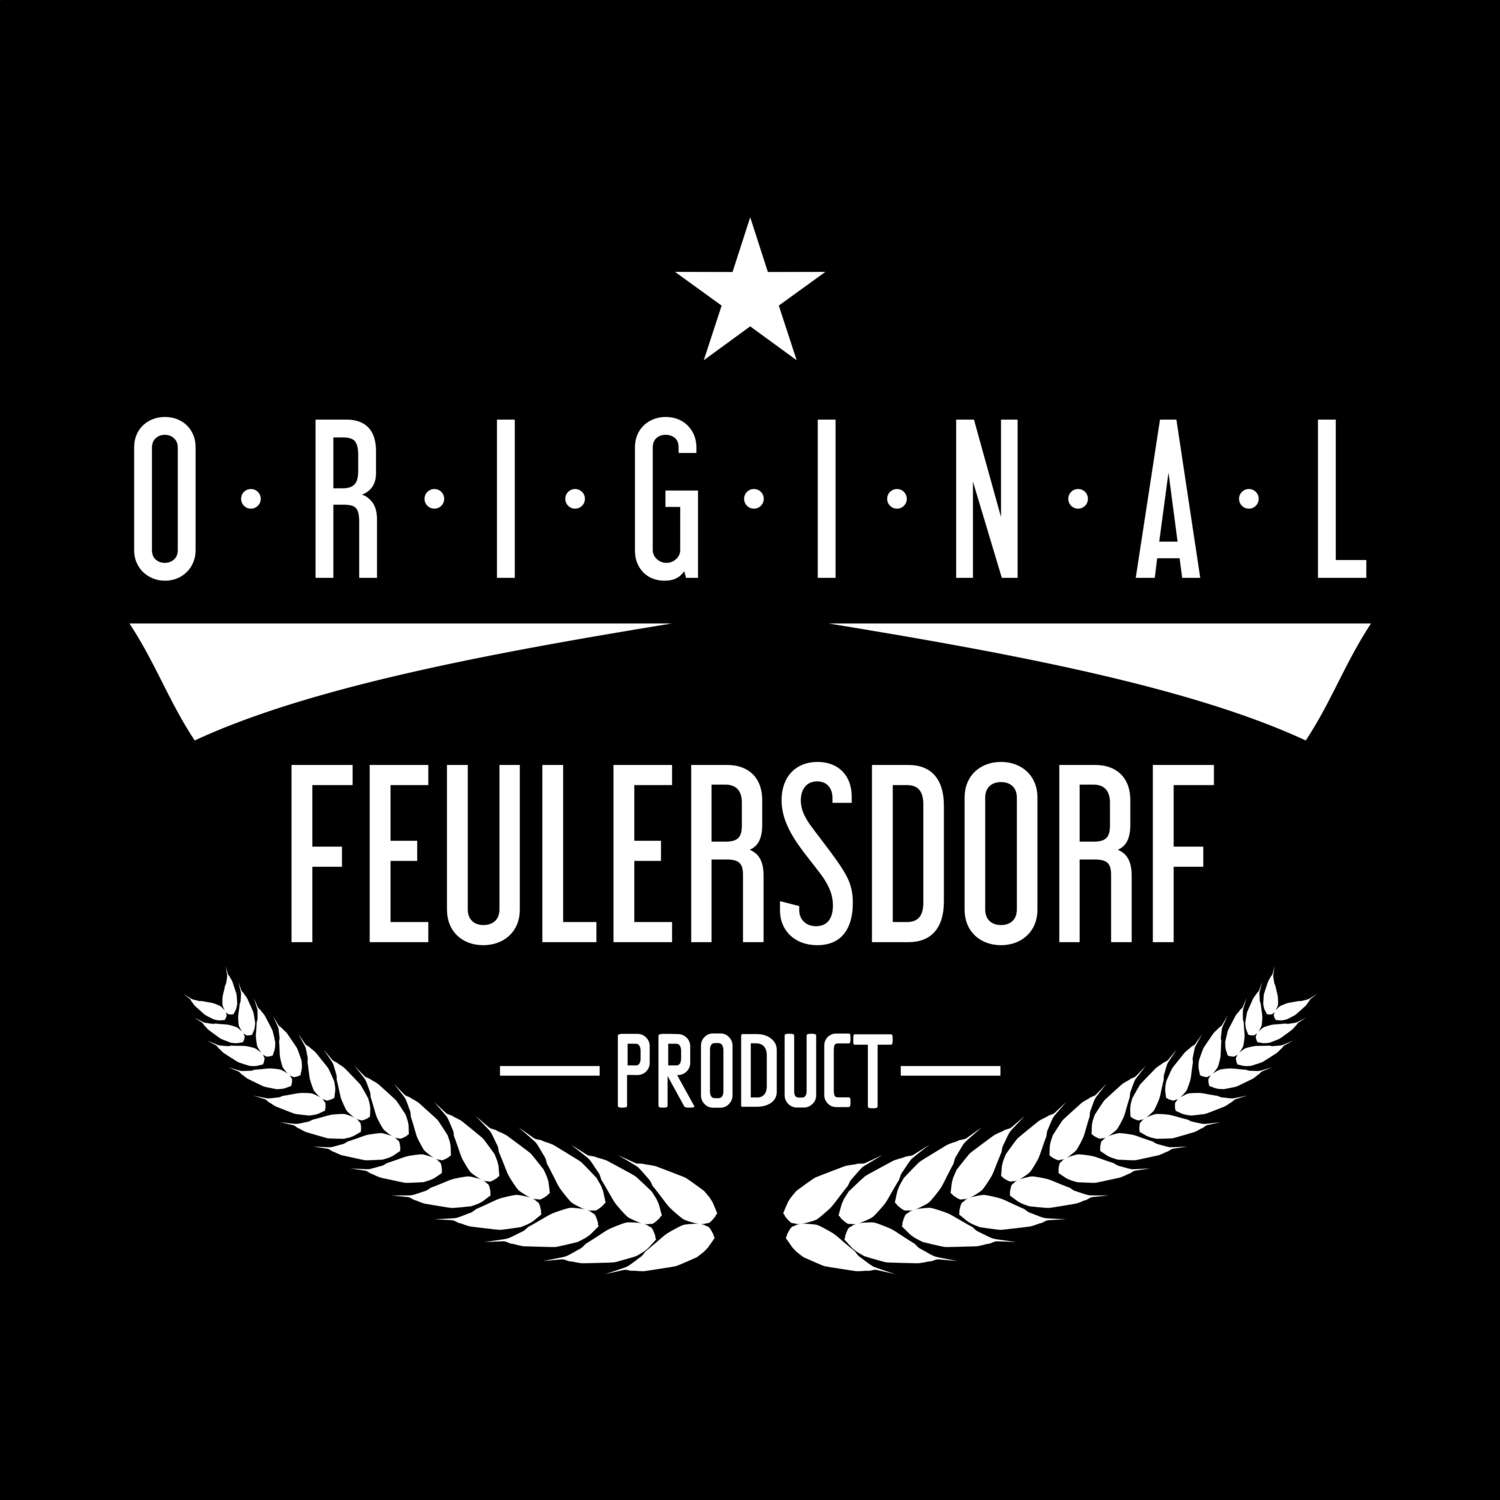 Feulersdorf T-Shirt »Original Product«